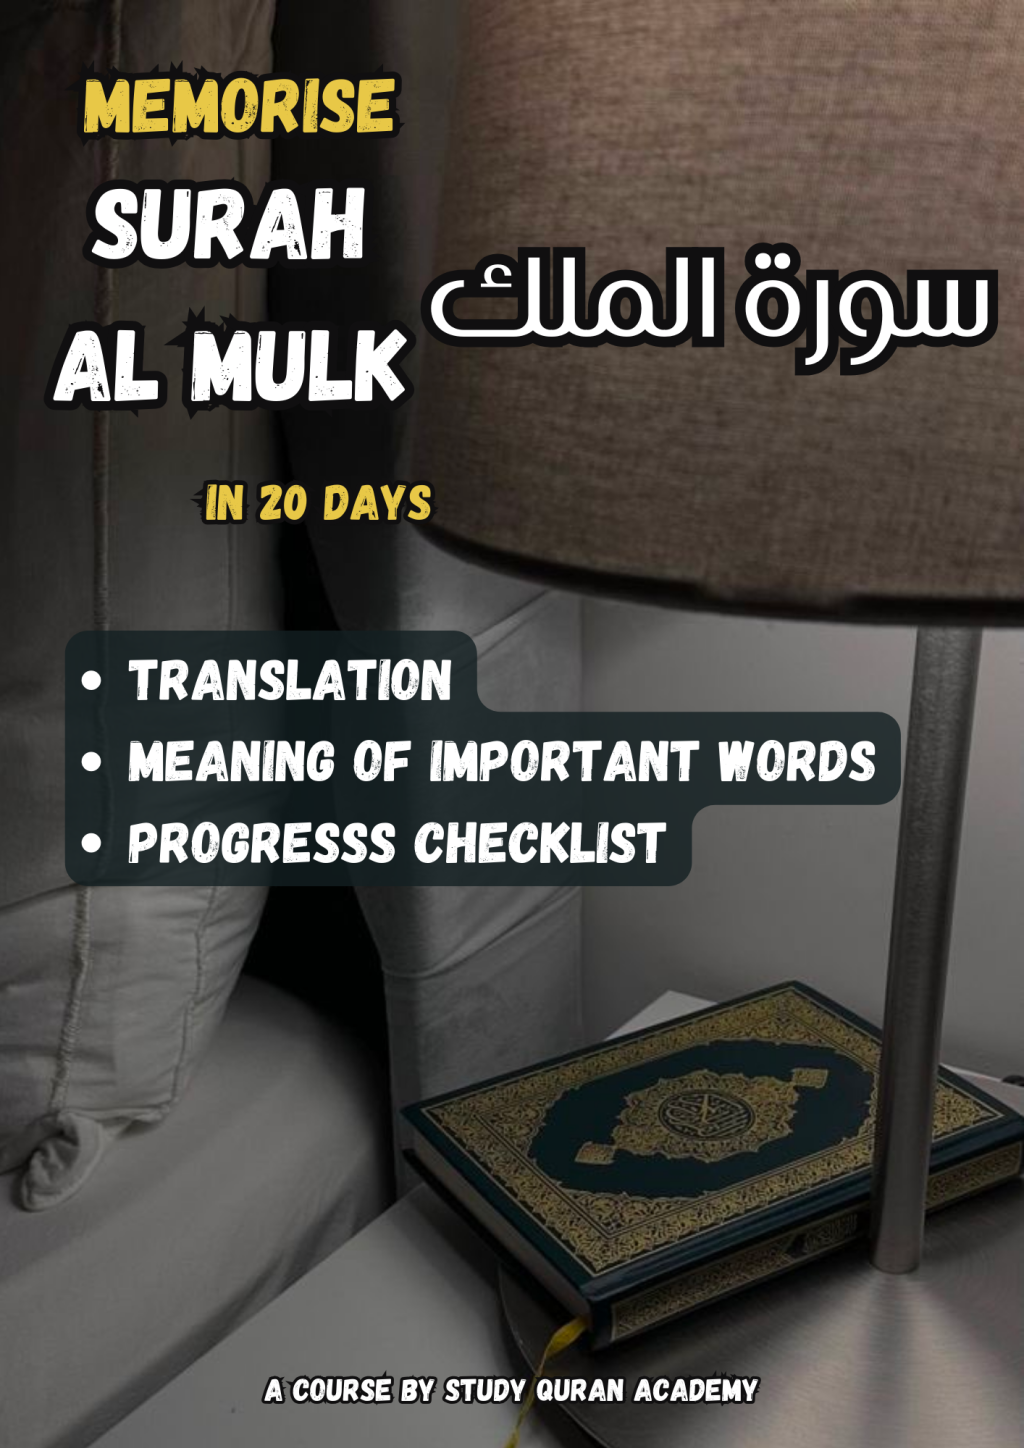 Memorise Surah al Mulk